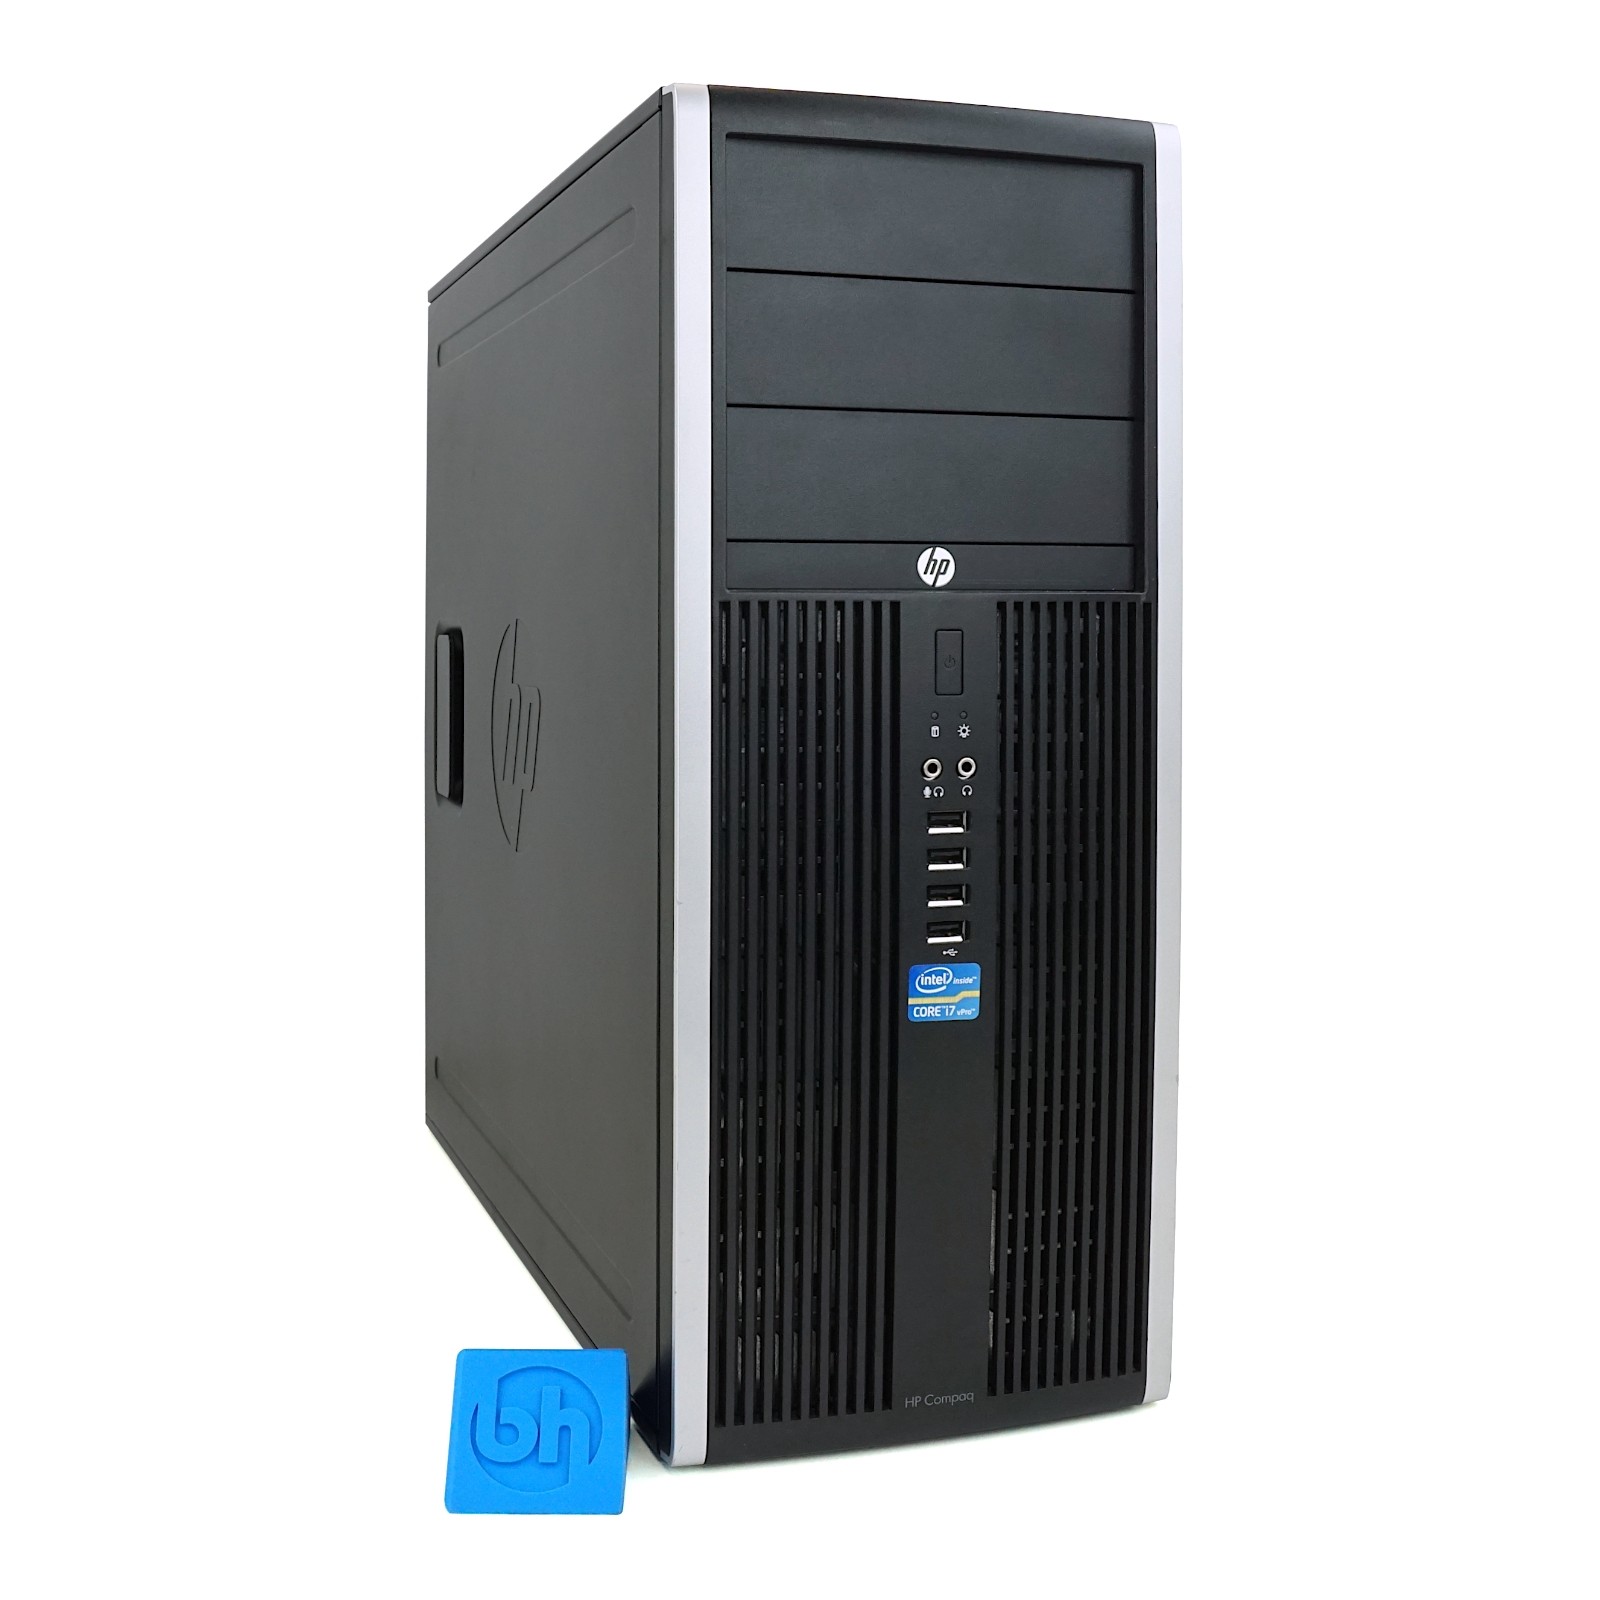 Hp Compaq 8200 Elite Cmt Desktop Pc Configure To Order